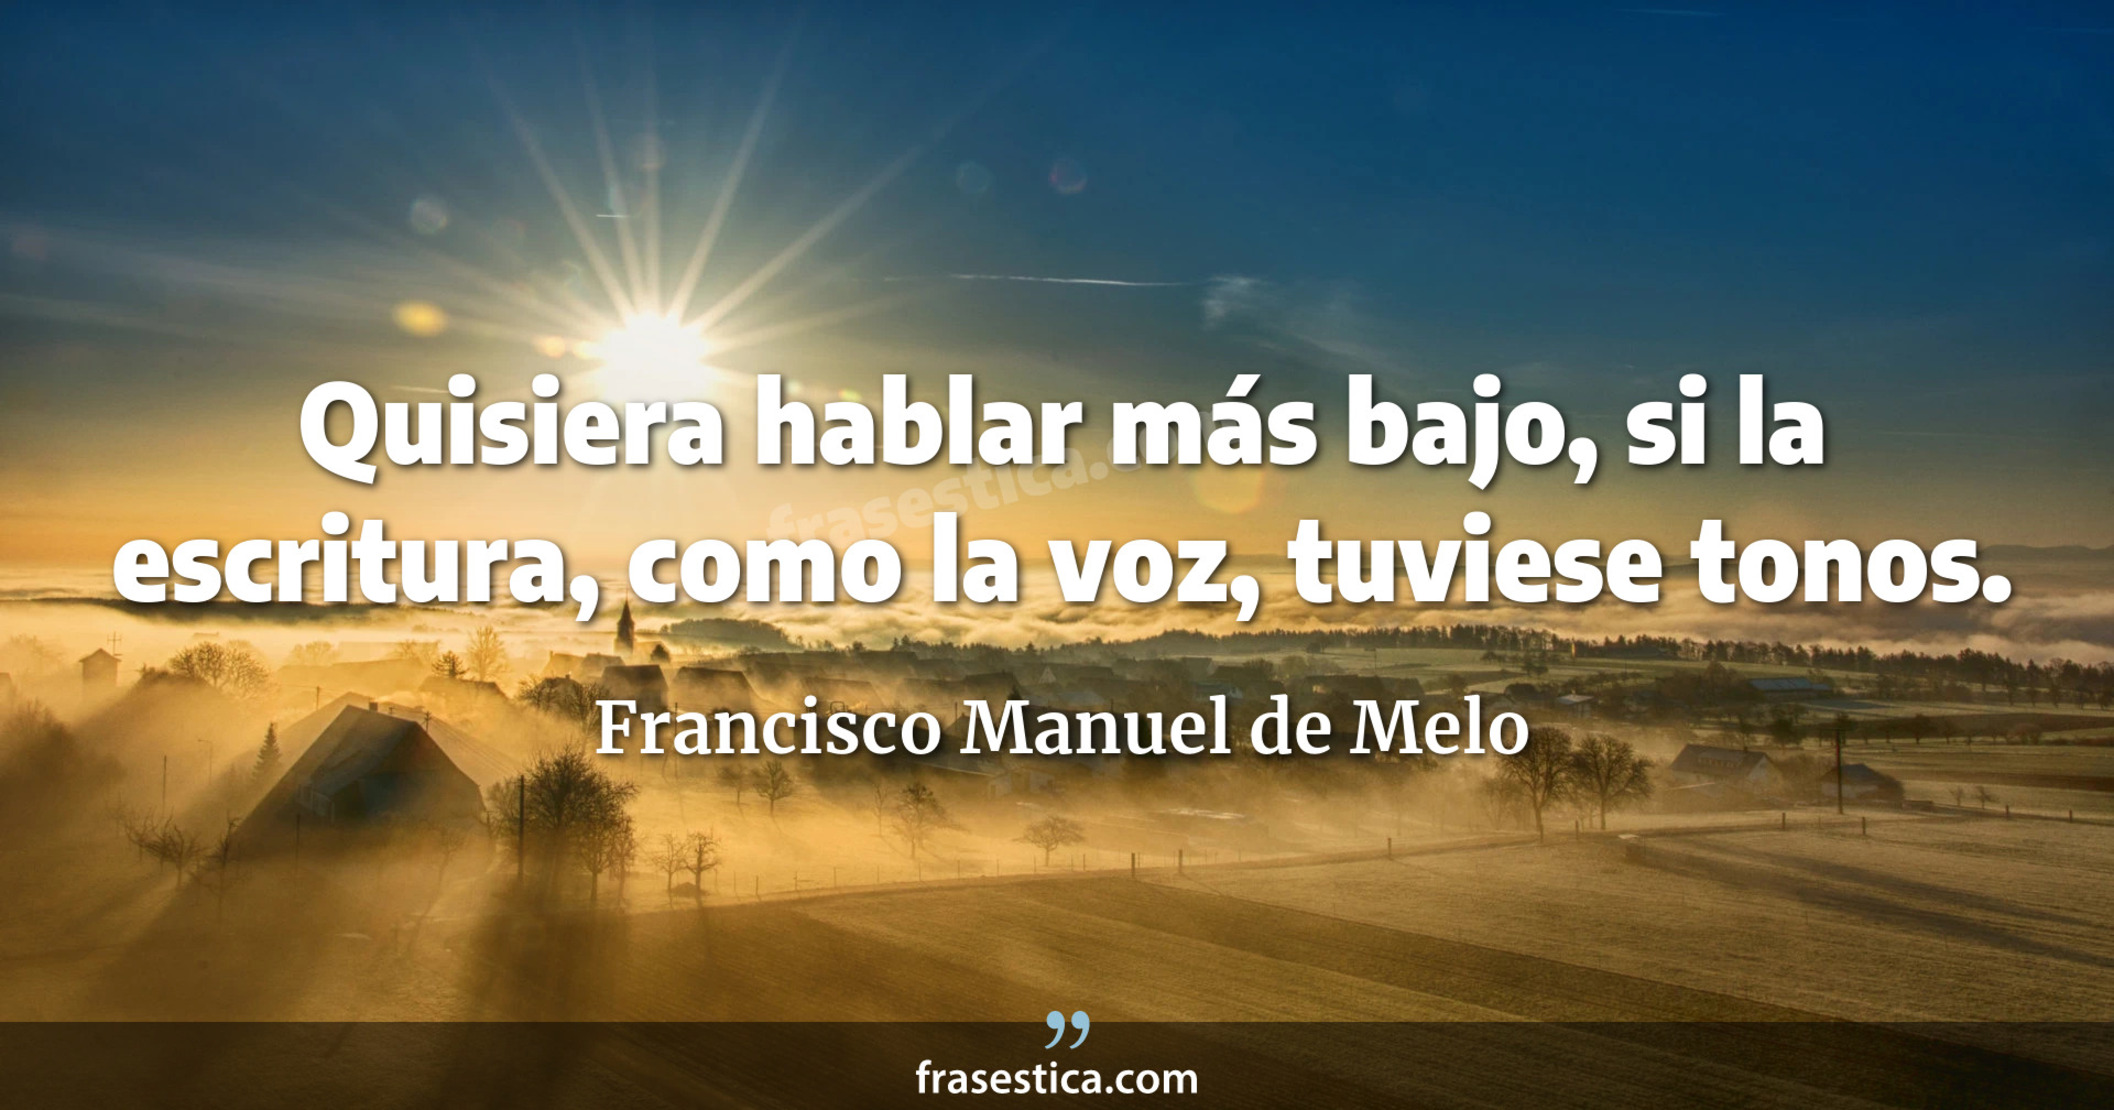 Quisiera hablar más bajo, si la escritura, como la voz, tuviese tonos. - Francisco Manuel de Melo